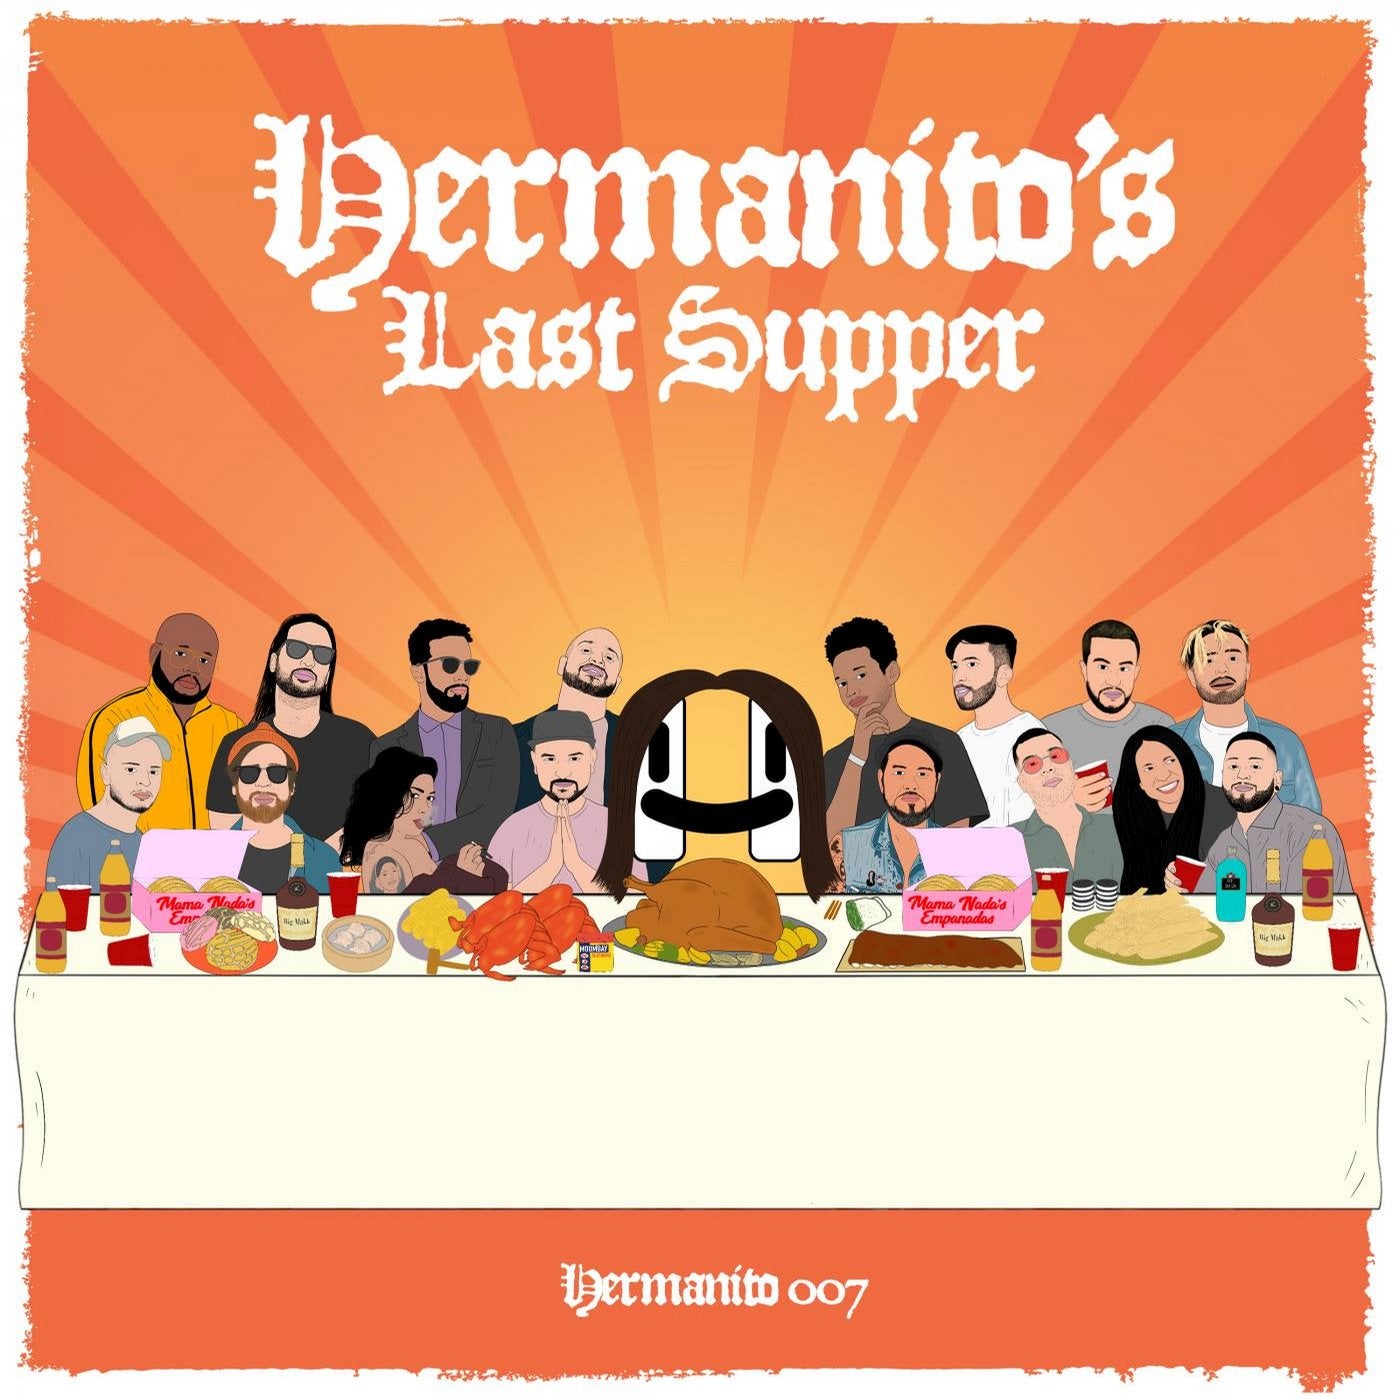 Hermanito's Last Supper